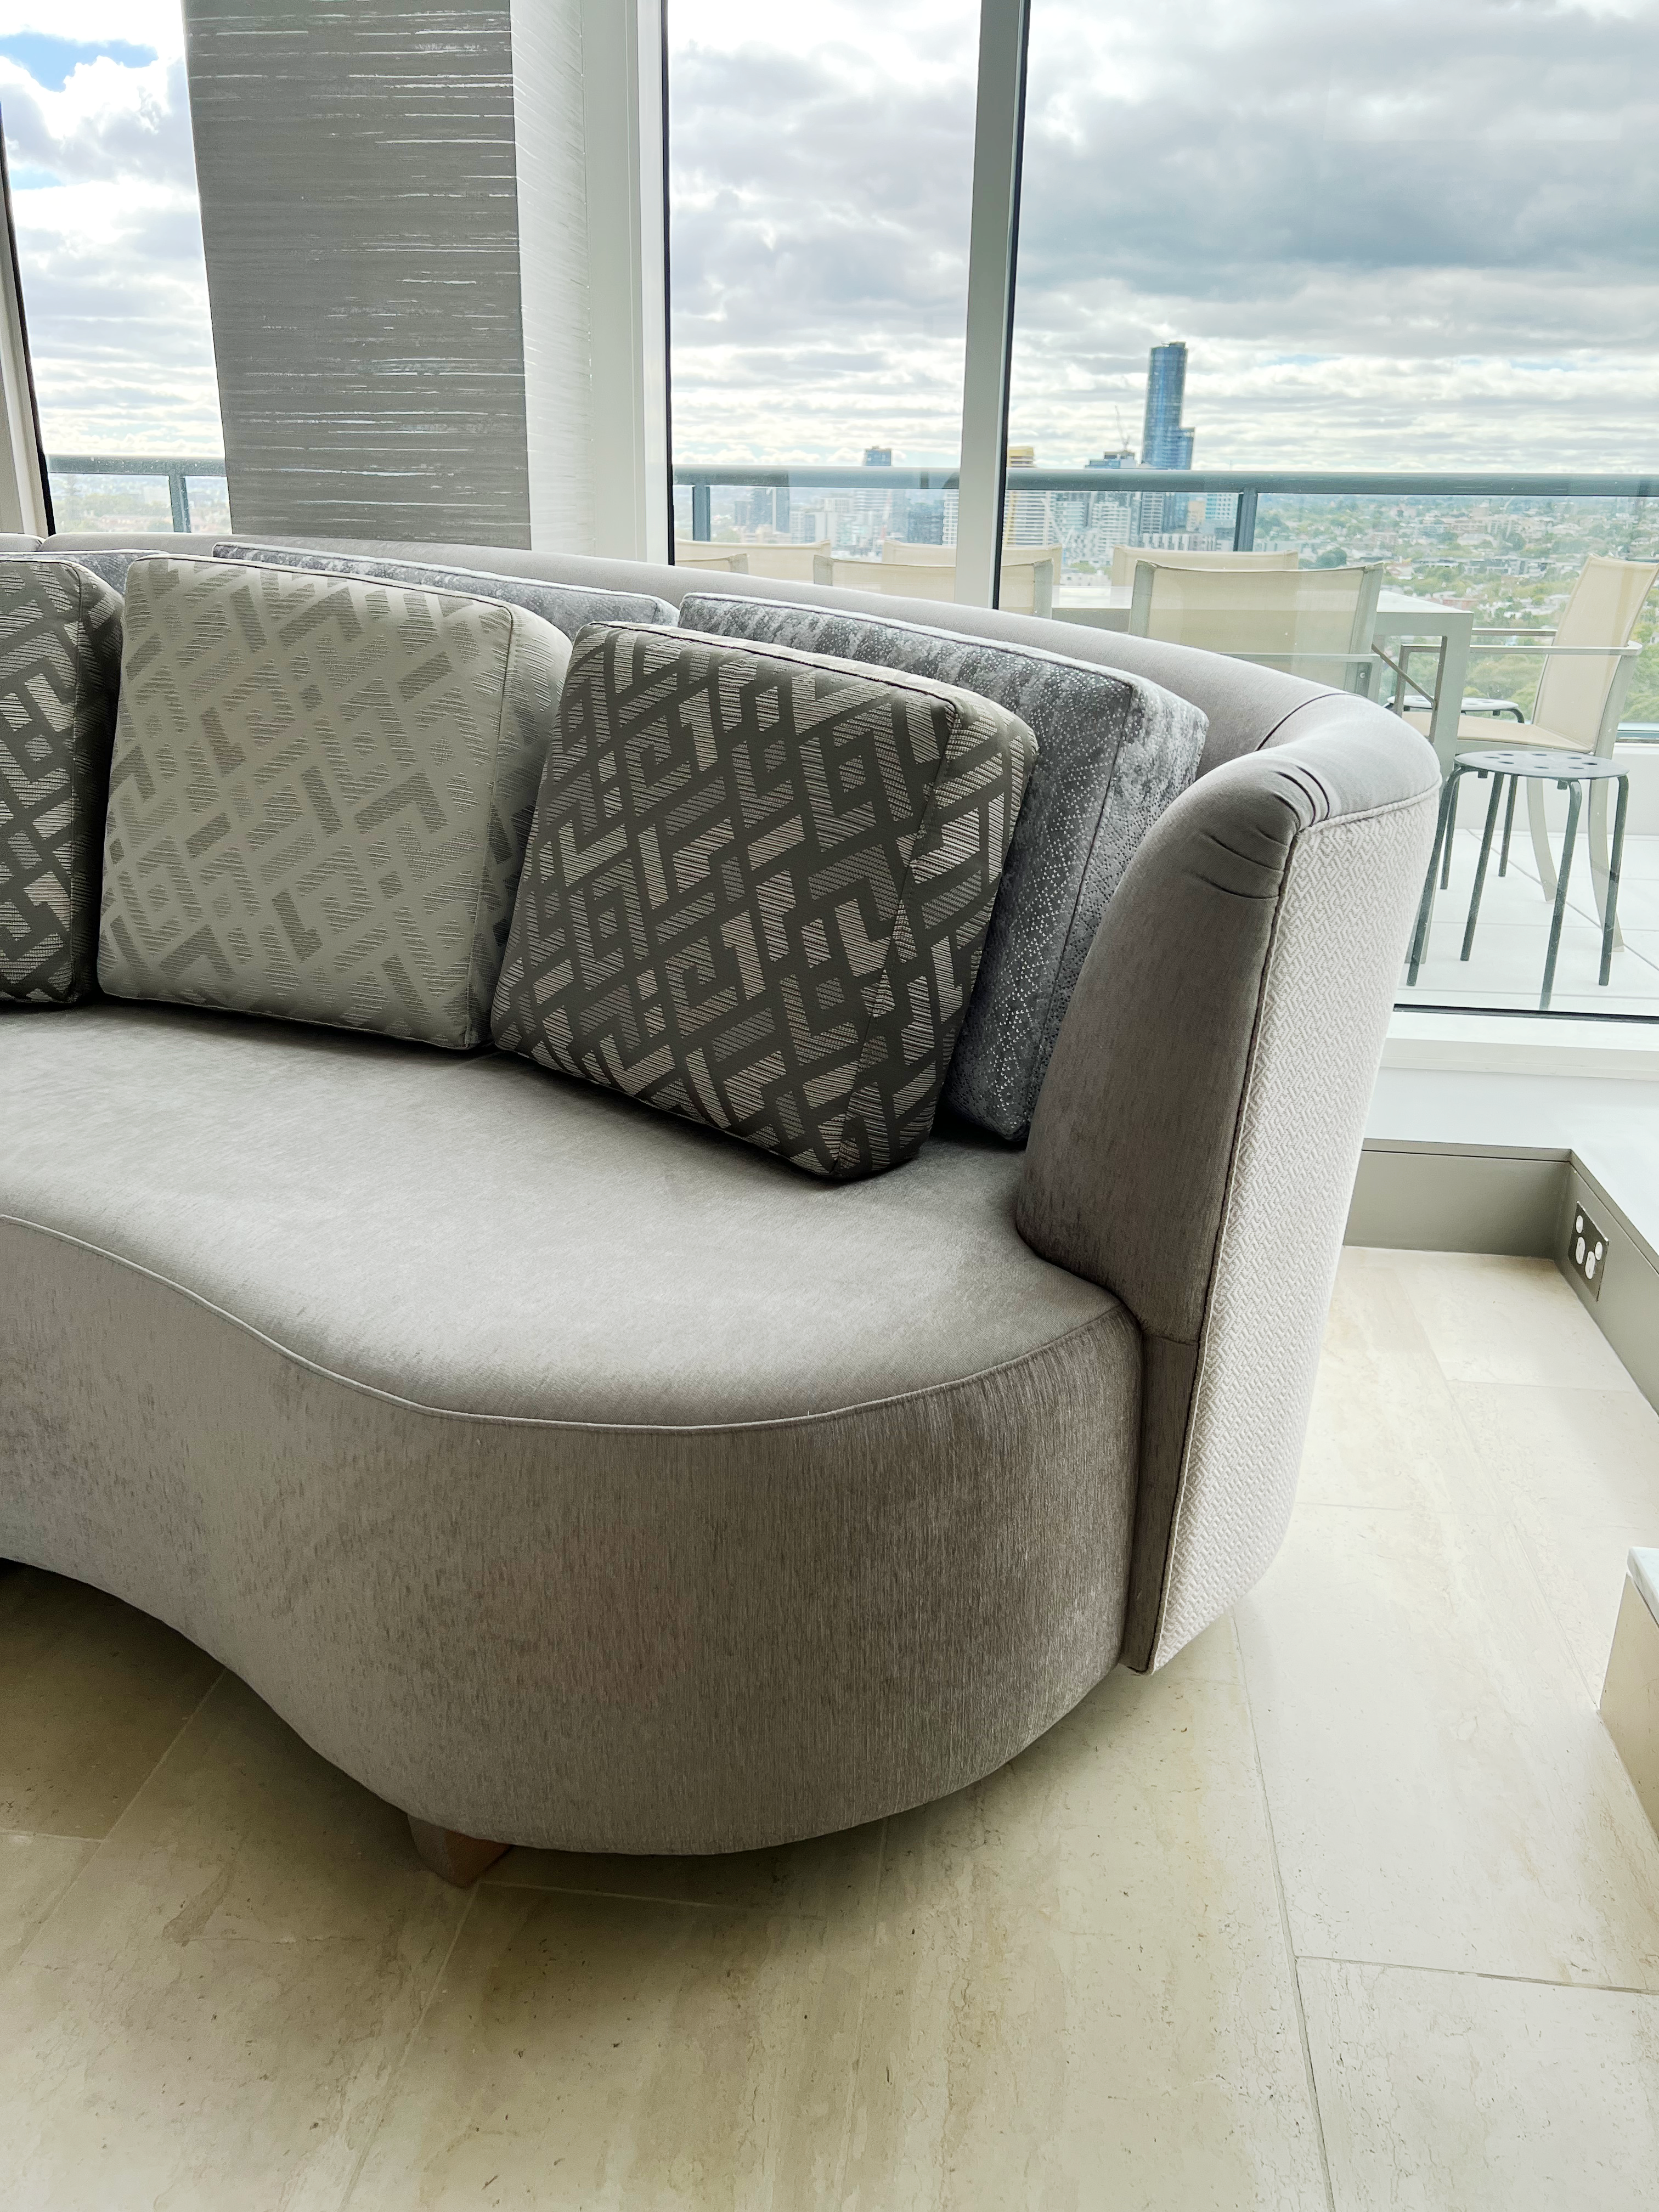 Mid Century Minimalist Curved Sofas,by luxury interior designer, Interior Designer Mark Alexander Design